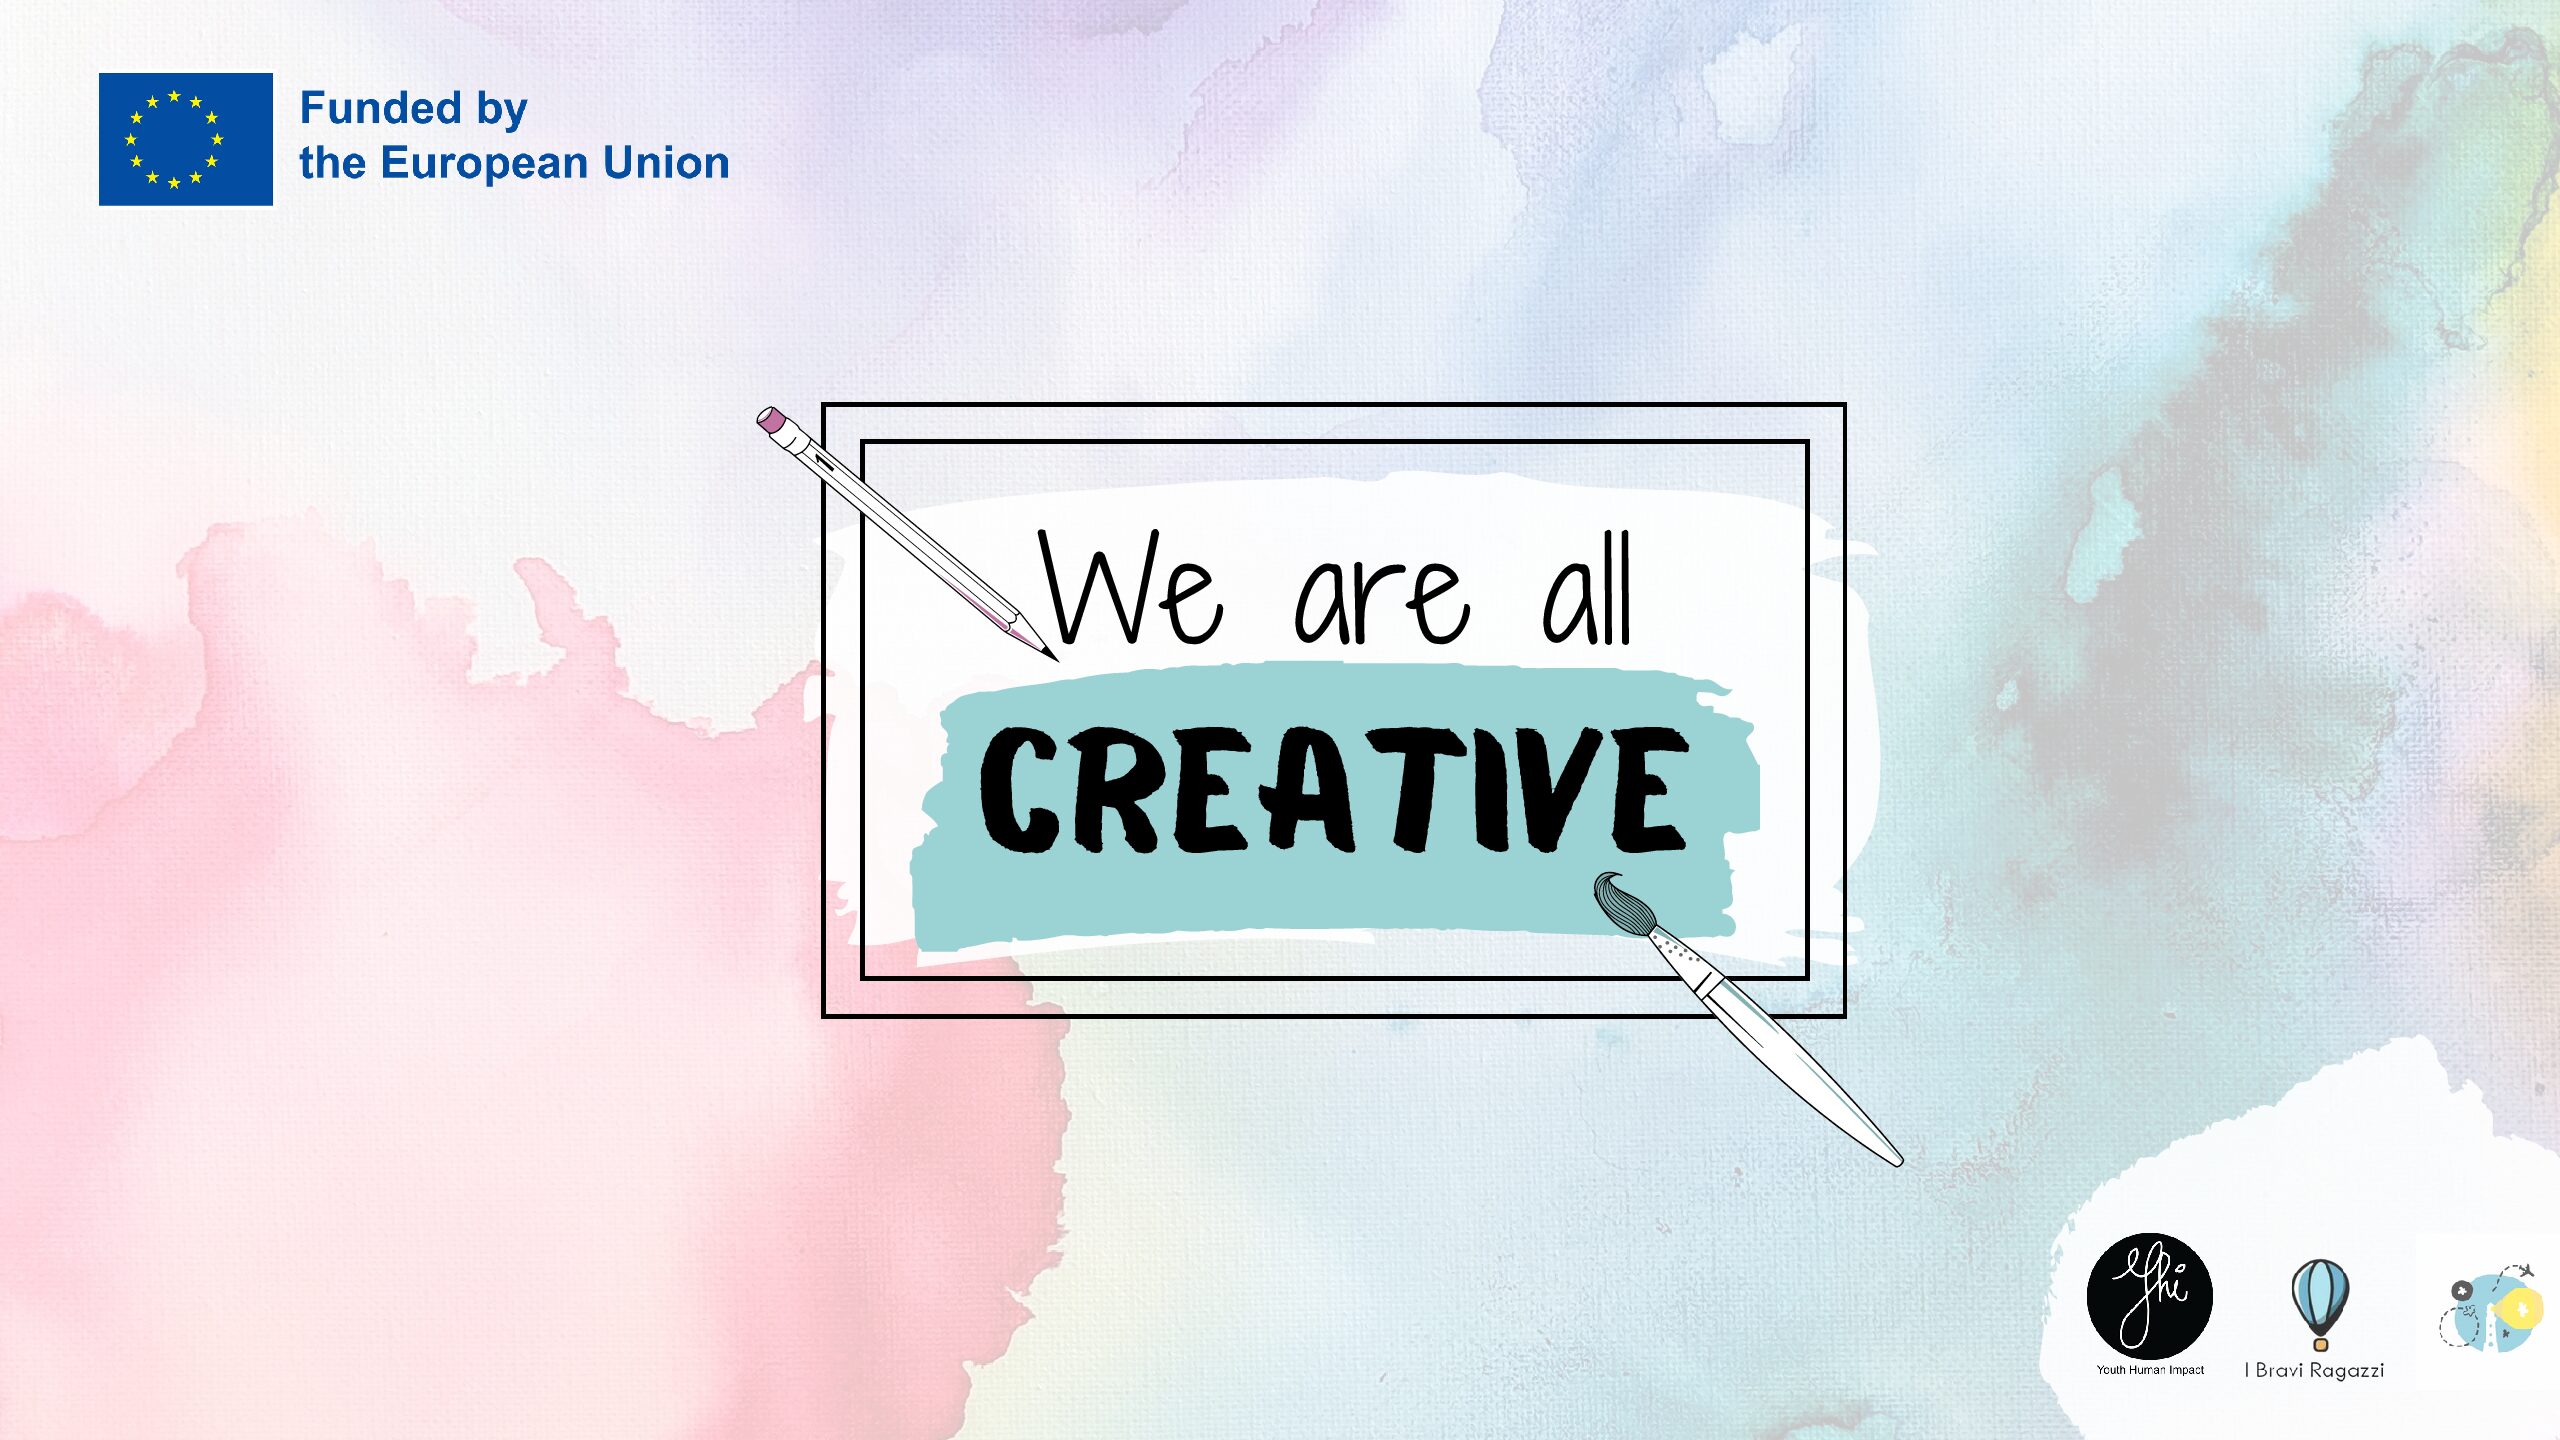 We are all creative – czego uczyliśmy się na tym międzynarodowym projekcie edukacyjnym dla osób dorosłych? 🔍📝